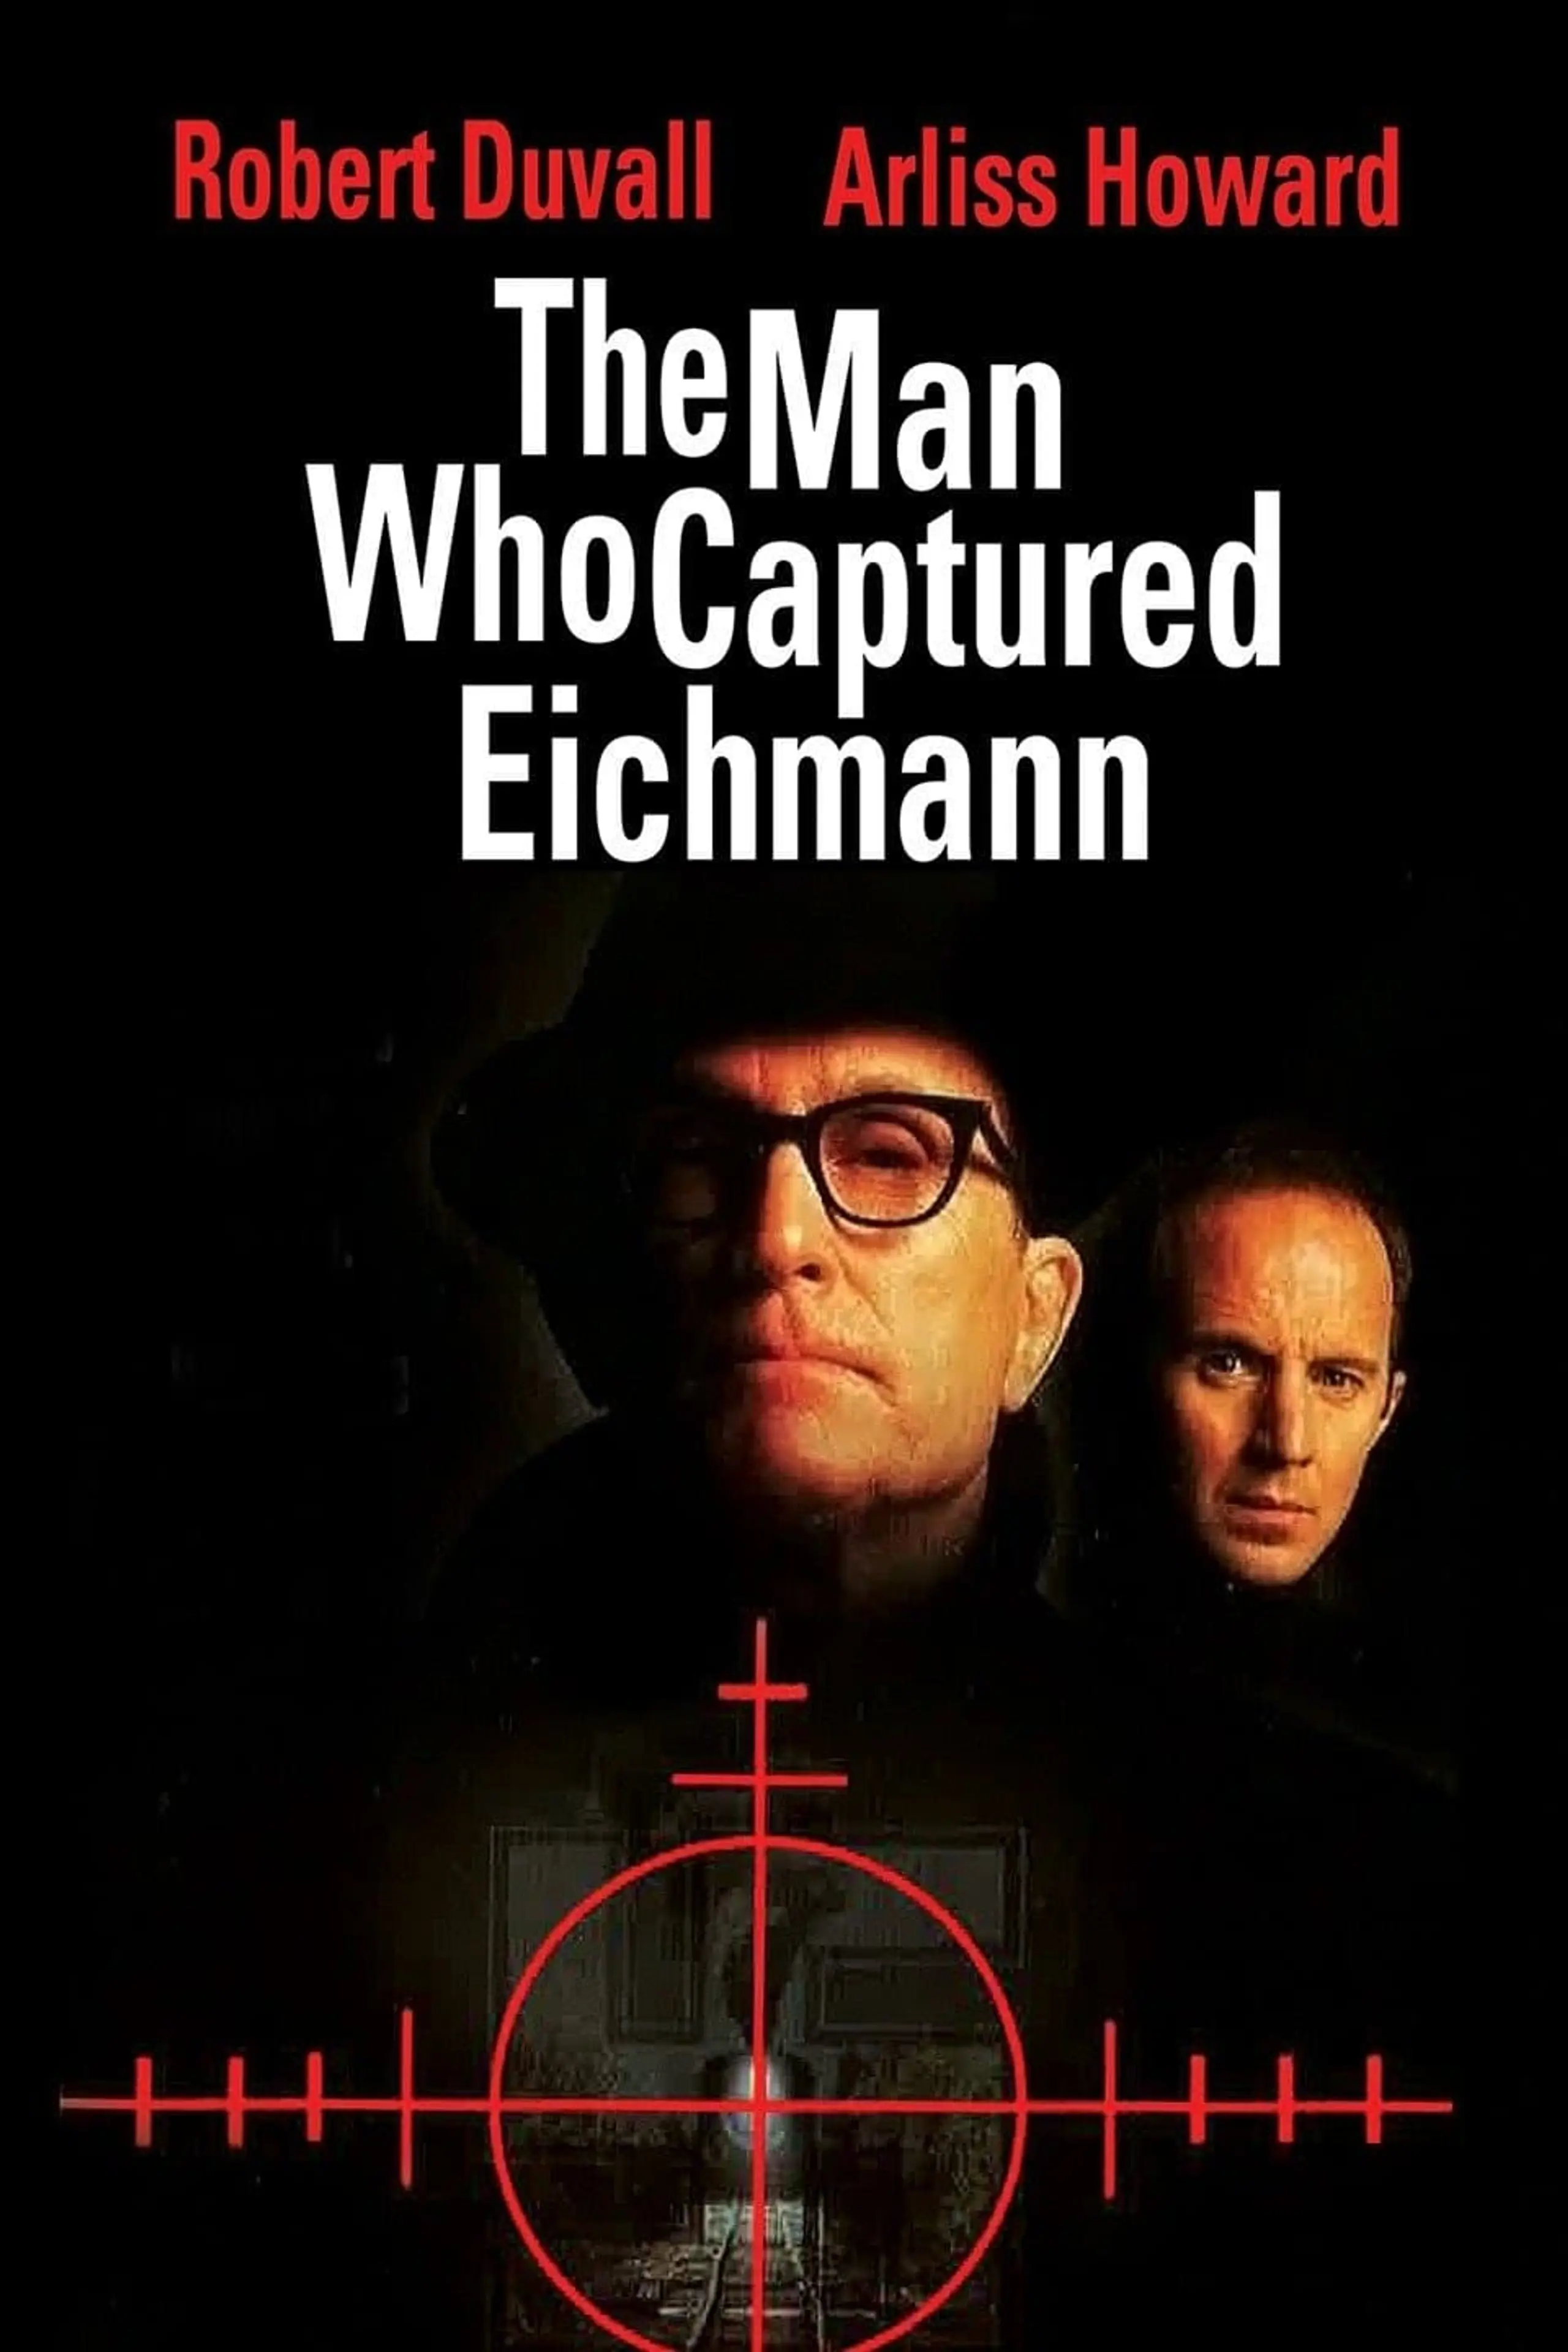 Der Mann, der Eichmann jagte